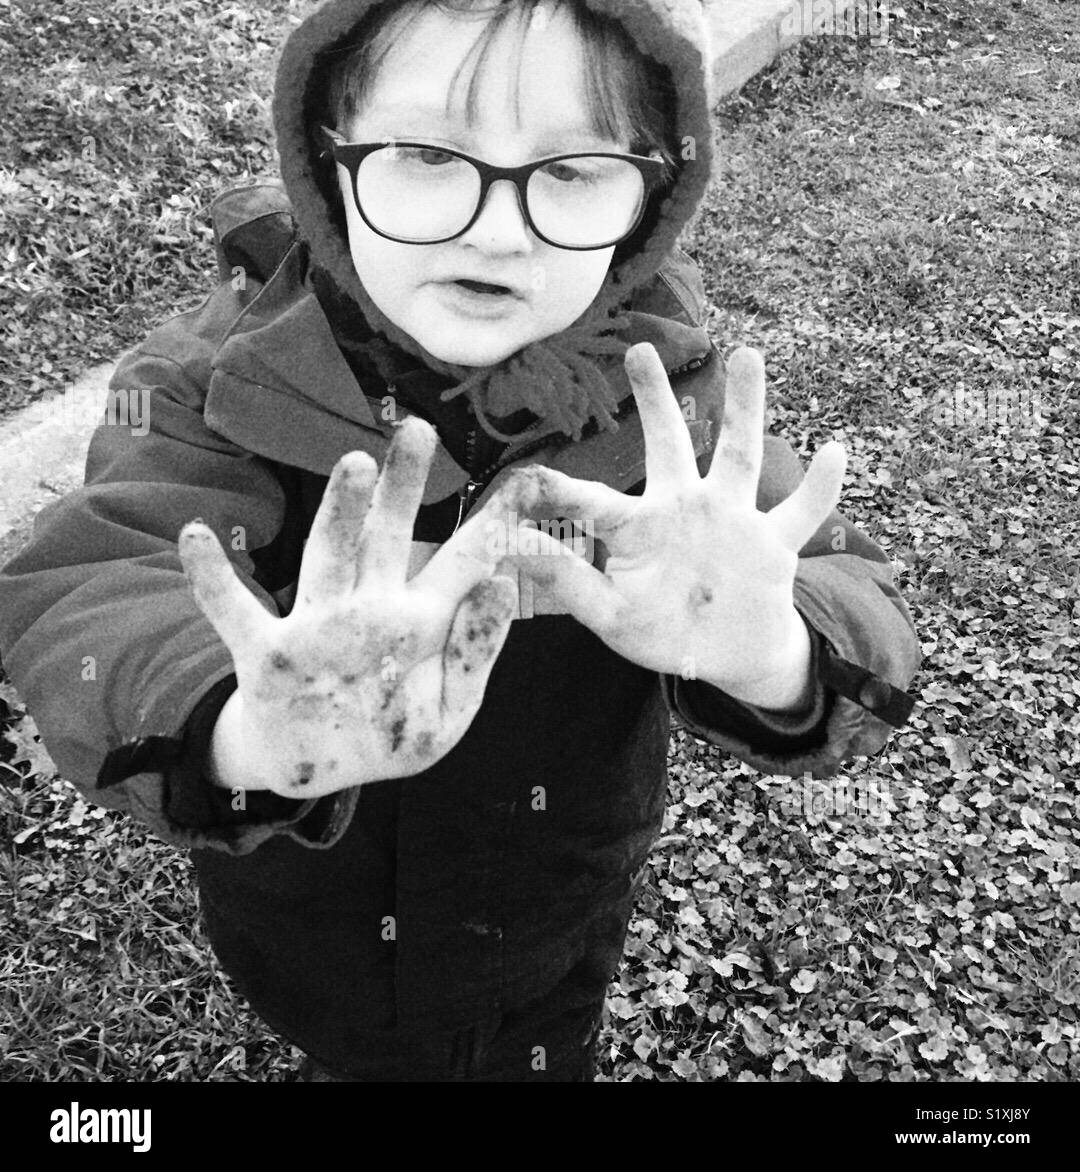 Jouer dans la terre aujourd'hui (photo de l'enfant montrant doigts sales) Banque D'Images